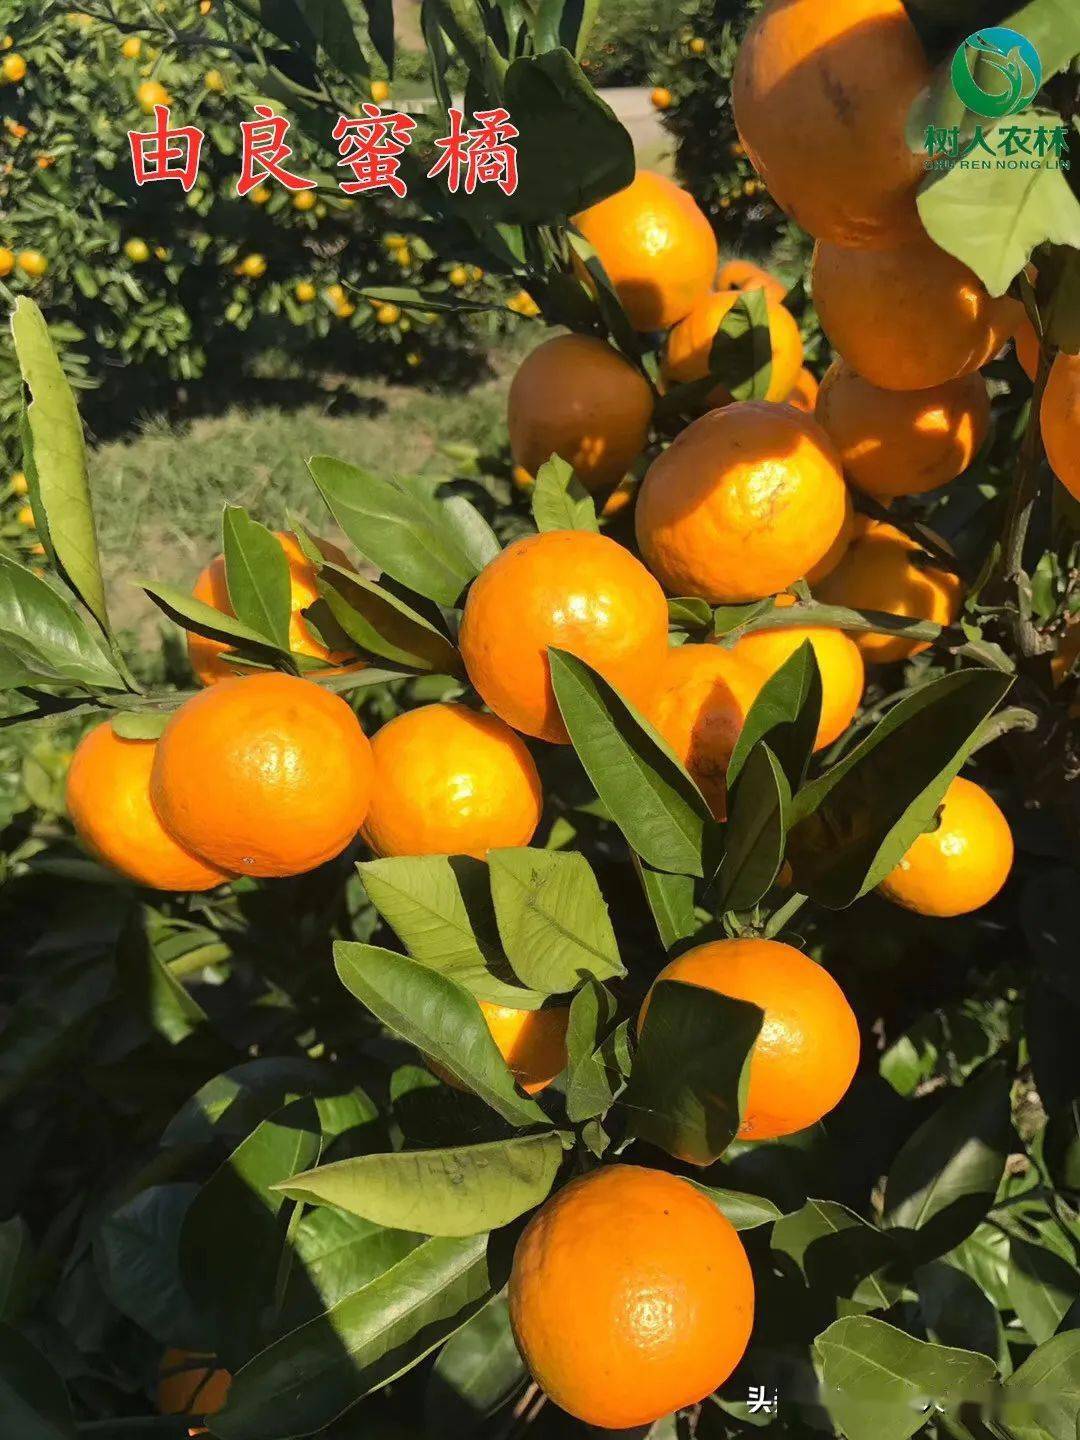 2021年柑橘新品种推荐!